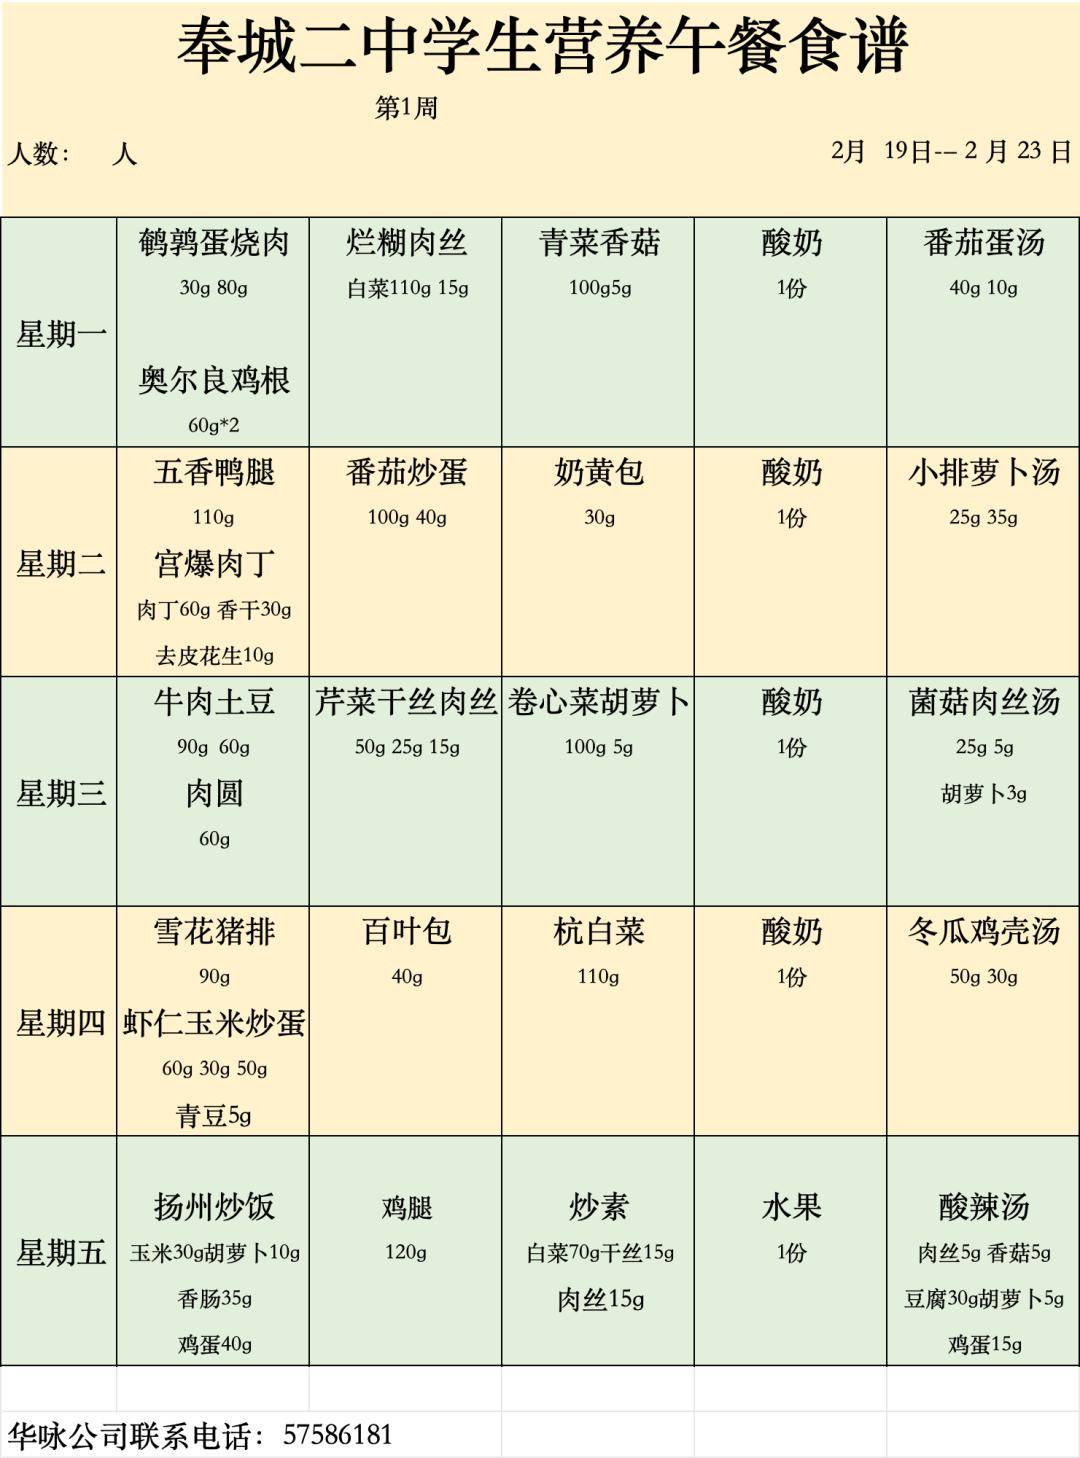 【公示】奉城第二中学第1周学生营养午餐菜单公示